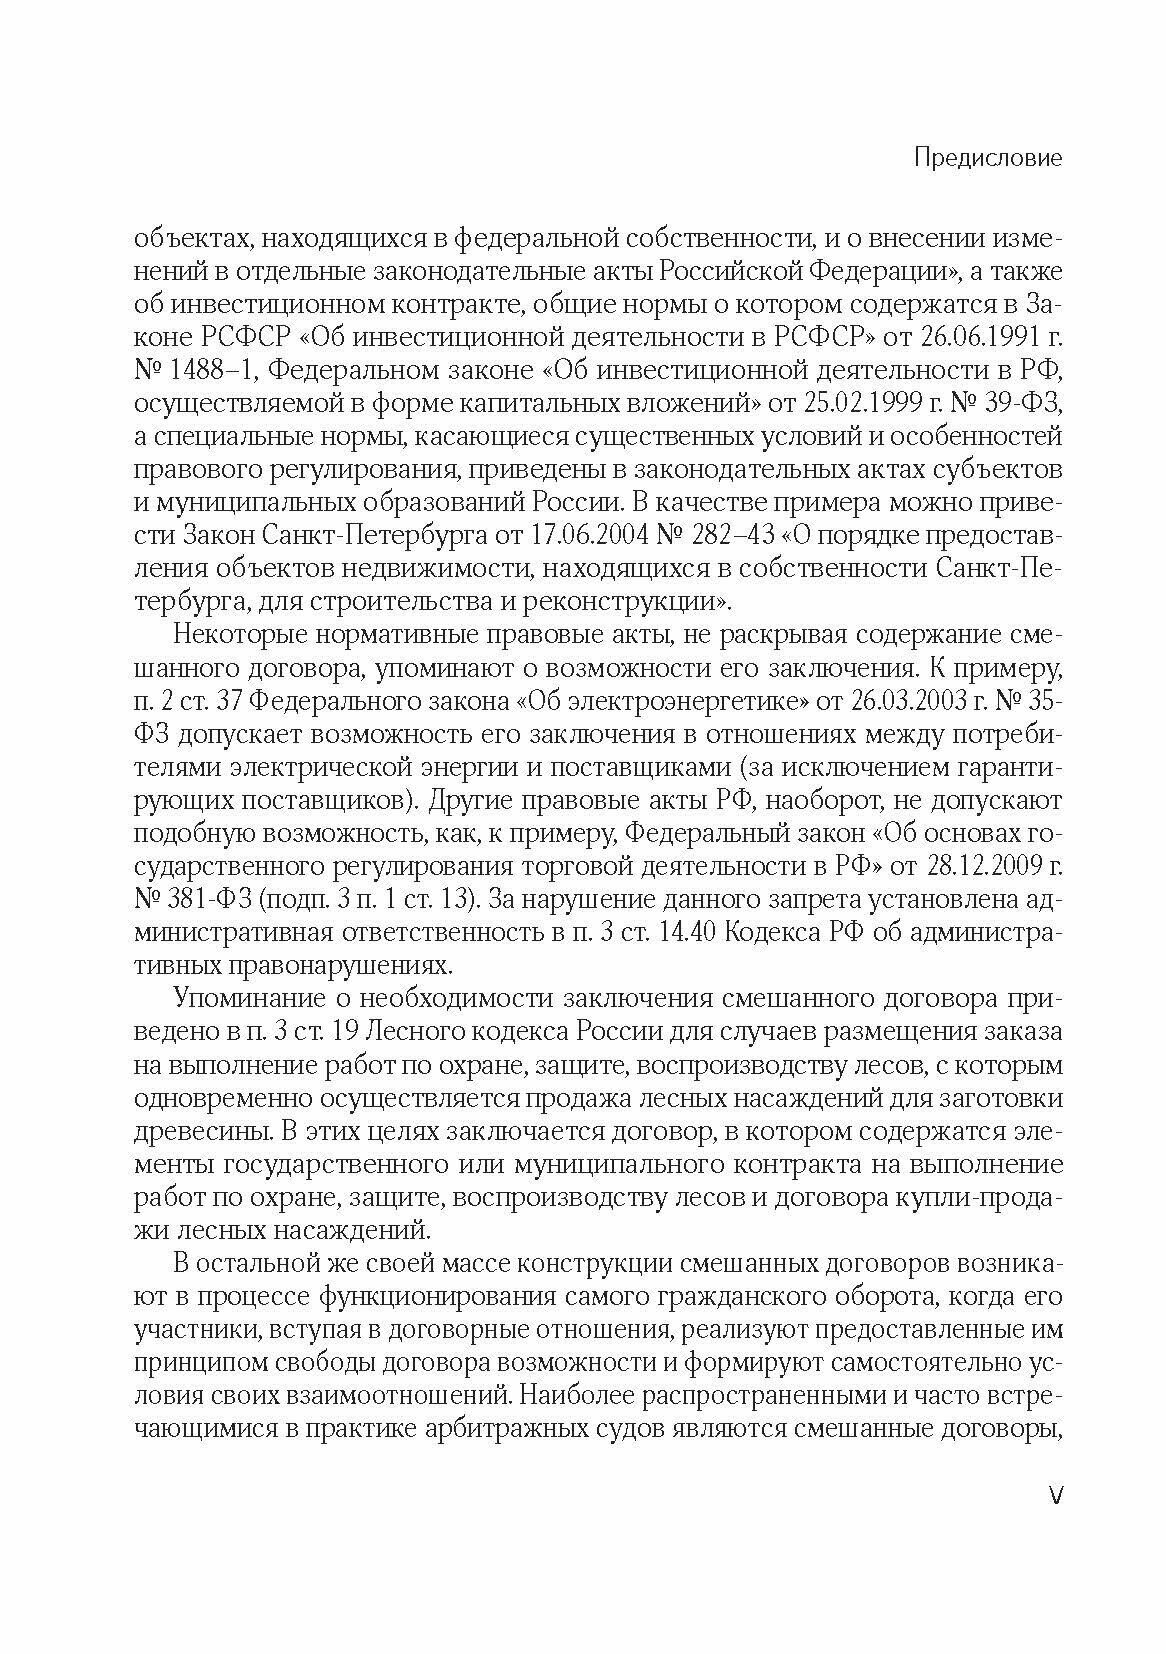 Смешанный договор в гражданском праве РФ - фото №6